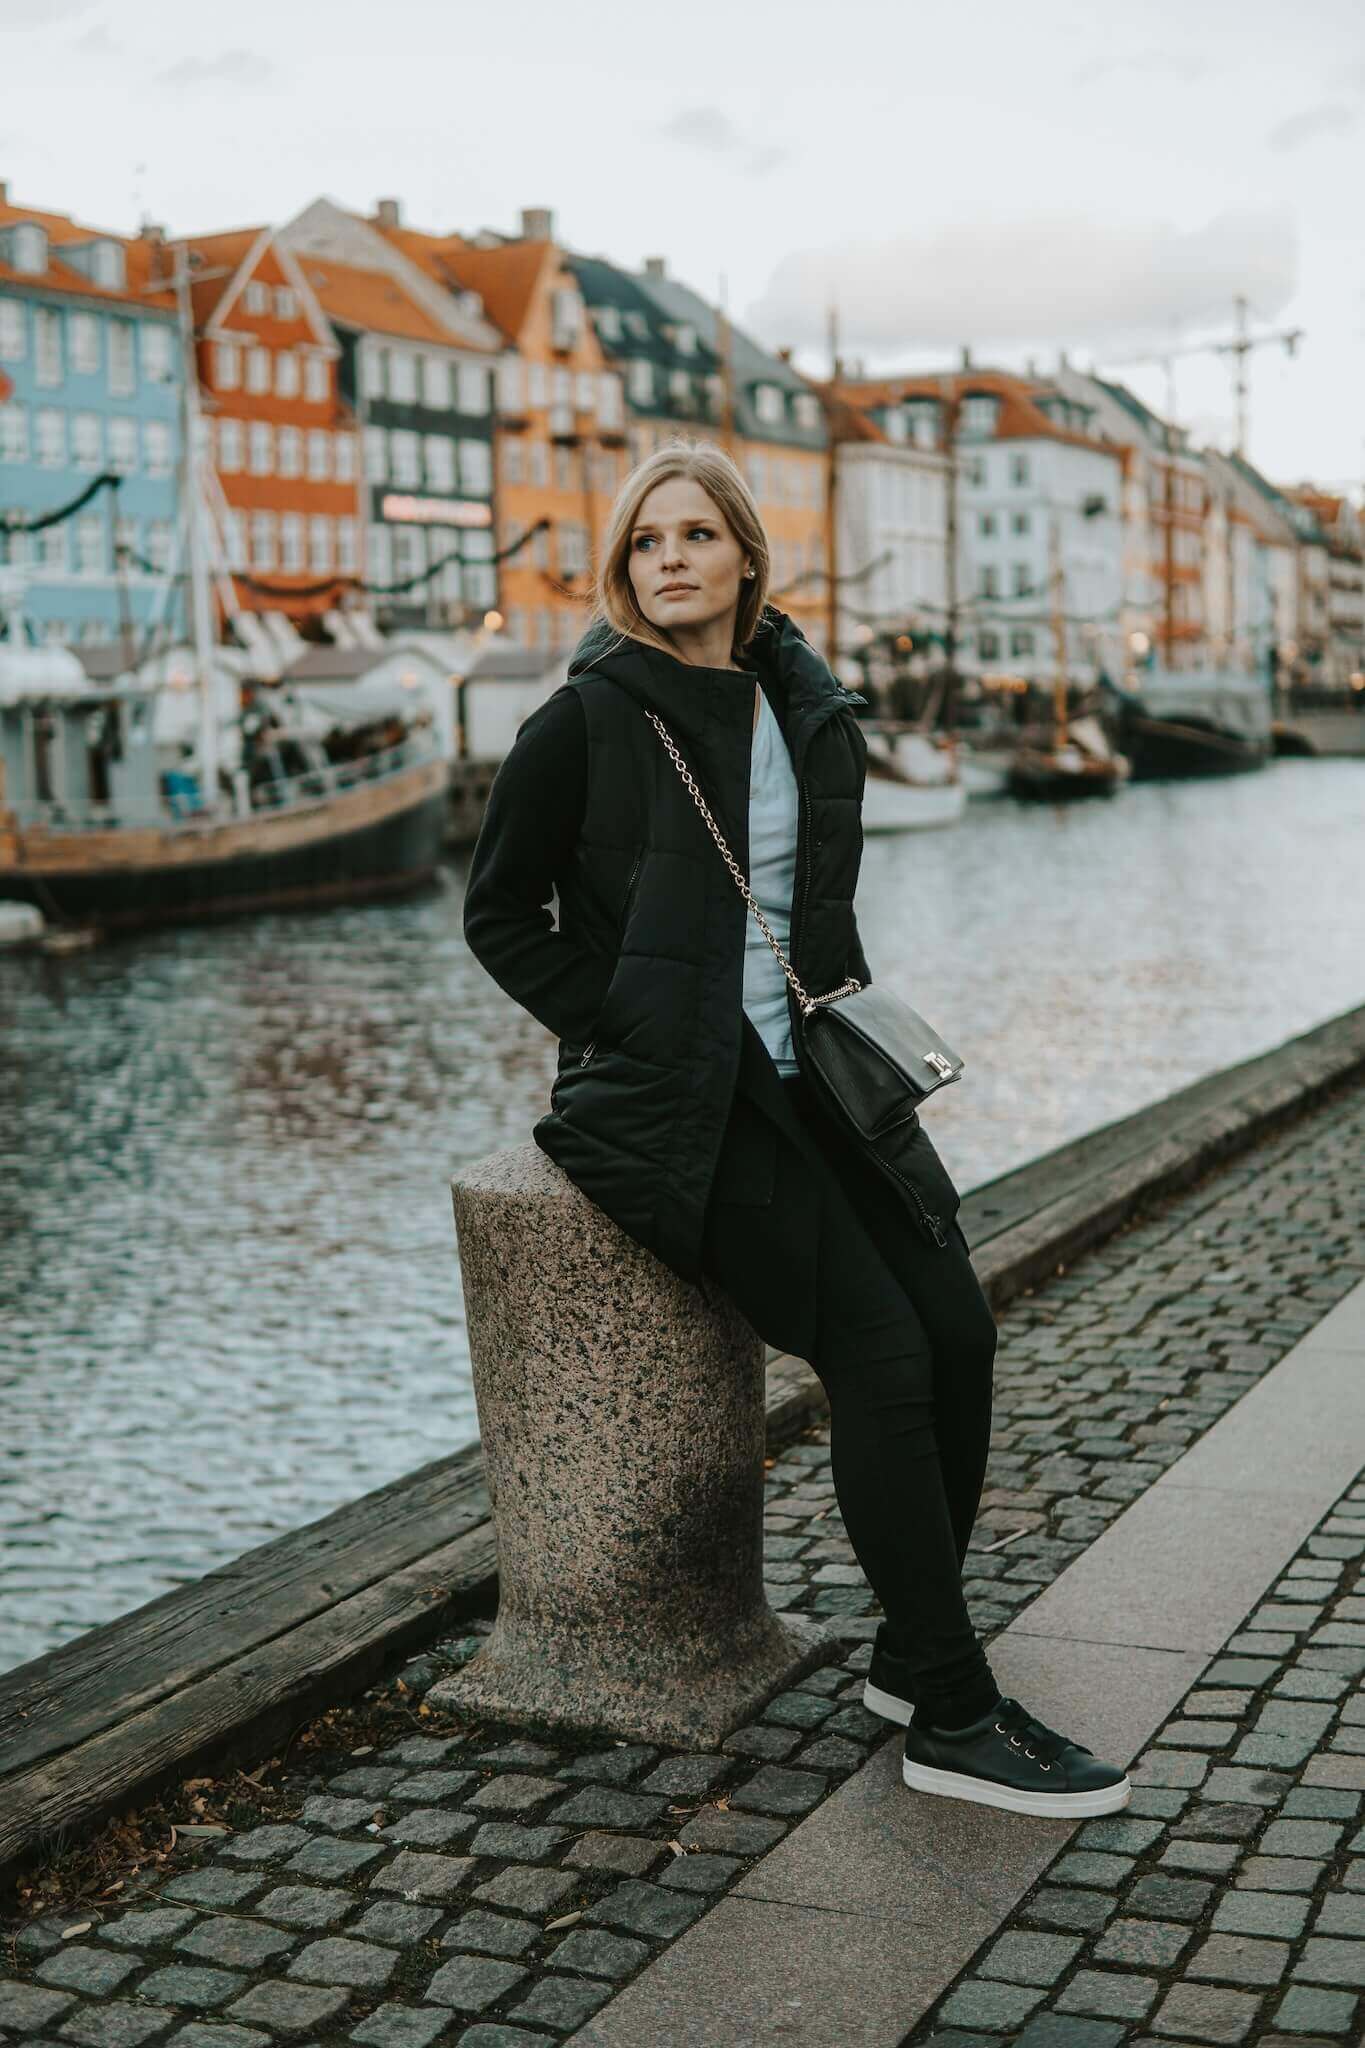 Nyhavn - Kodaň